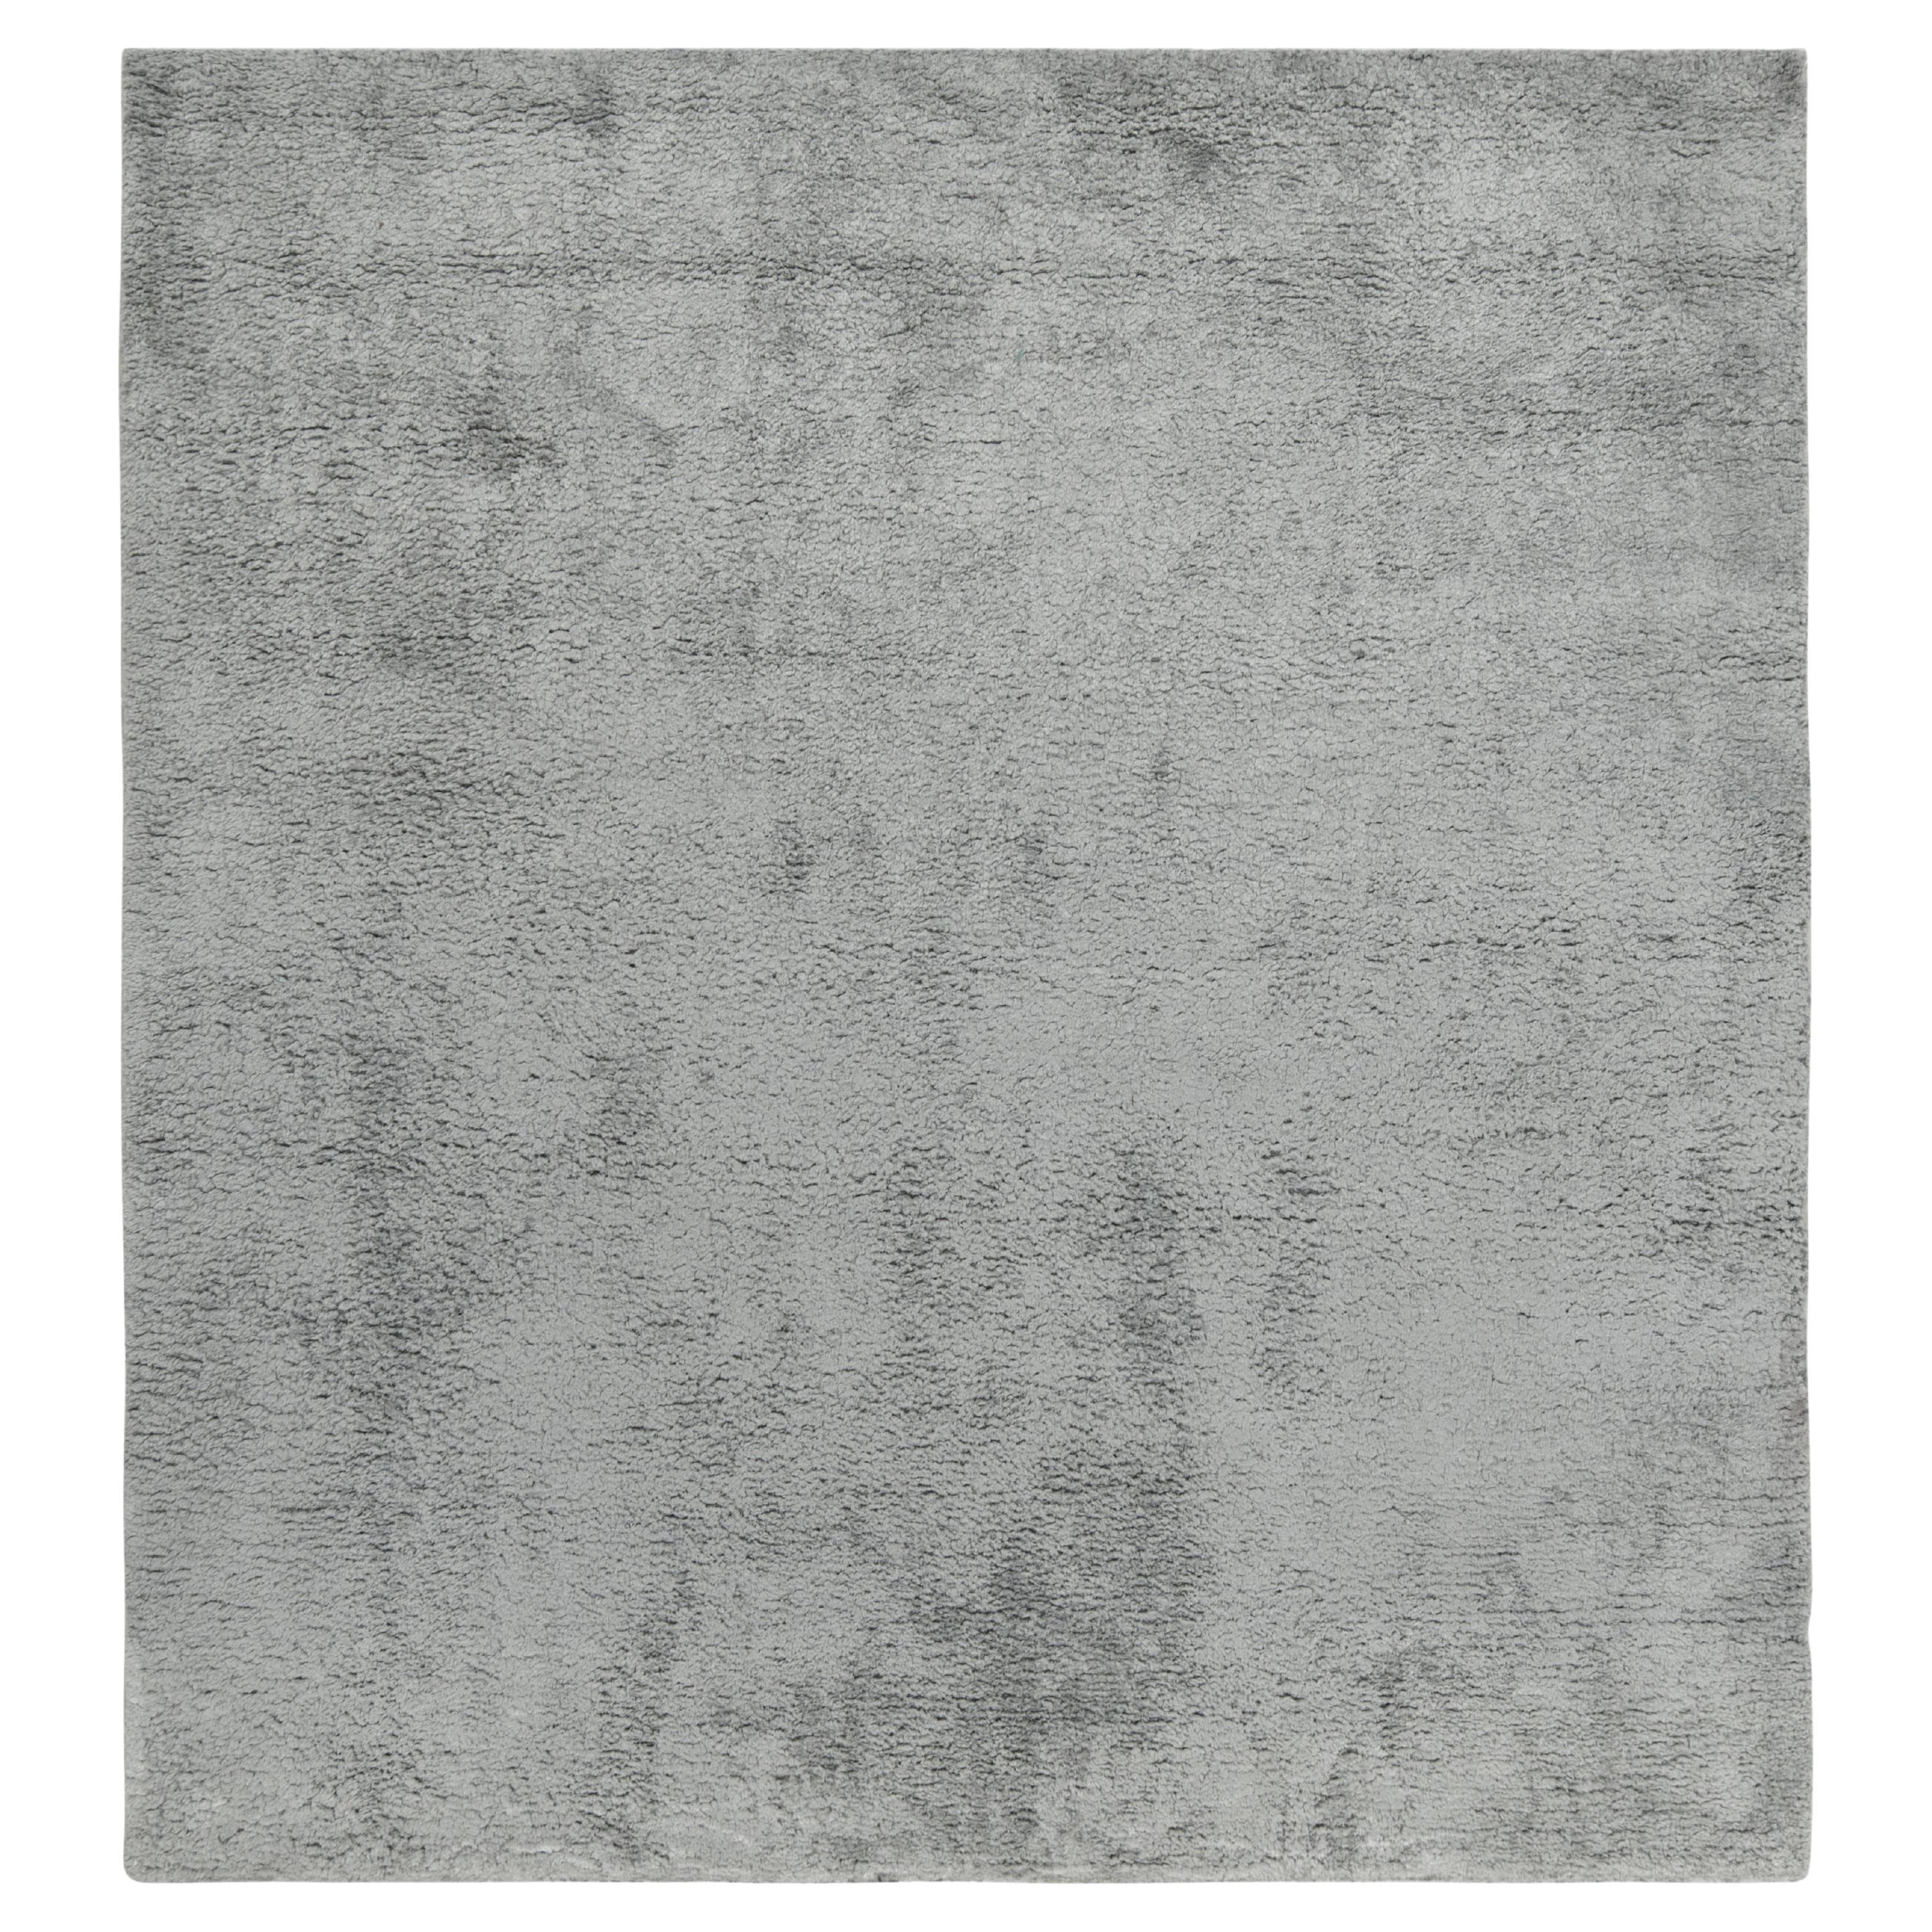 Zeitgenössischer Teppich von Rug & Kilim in massivem Grau, hoher Flor